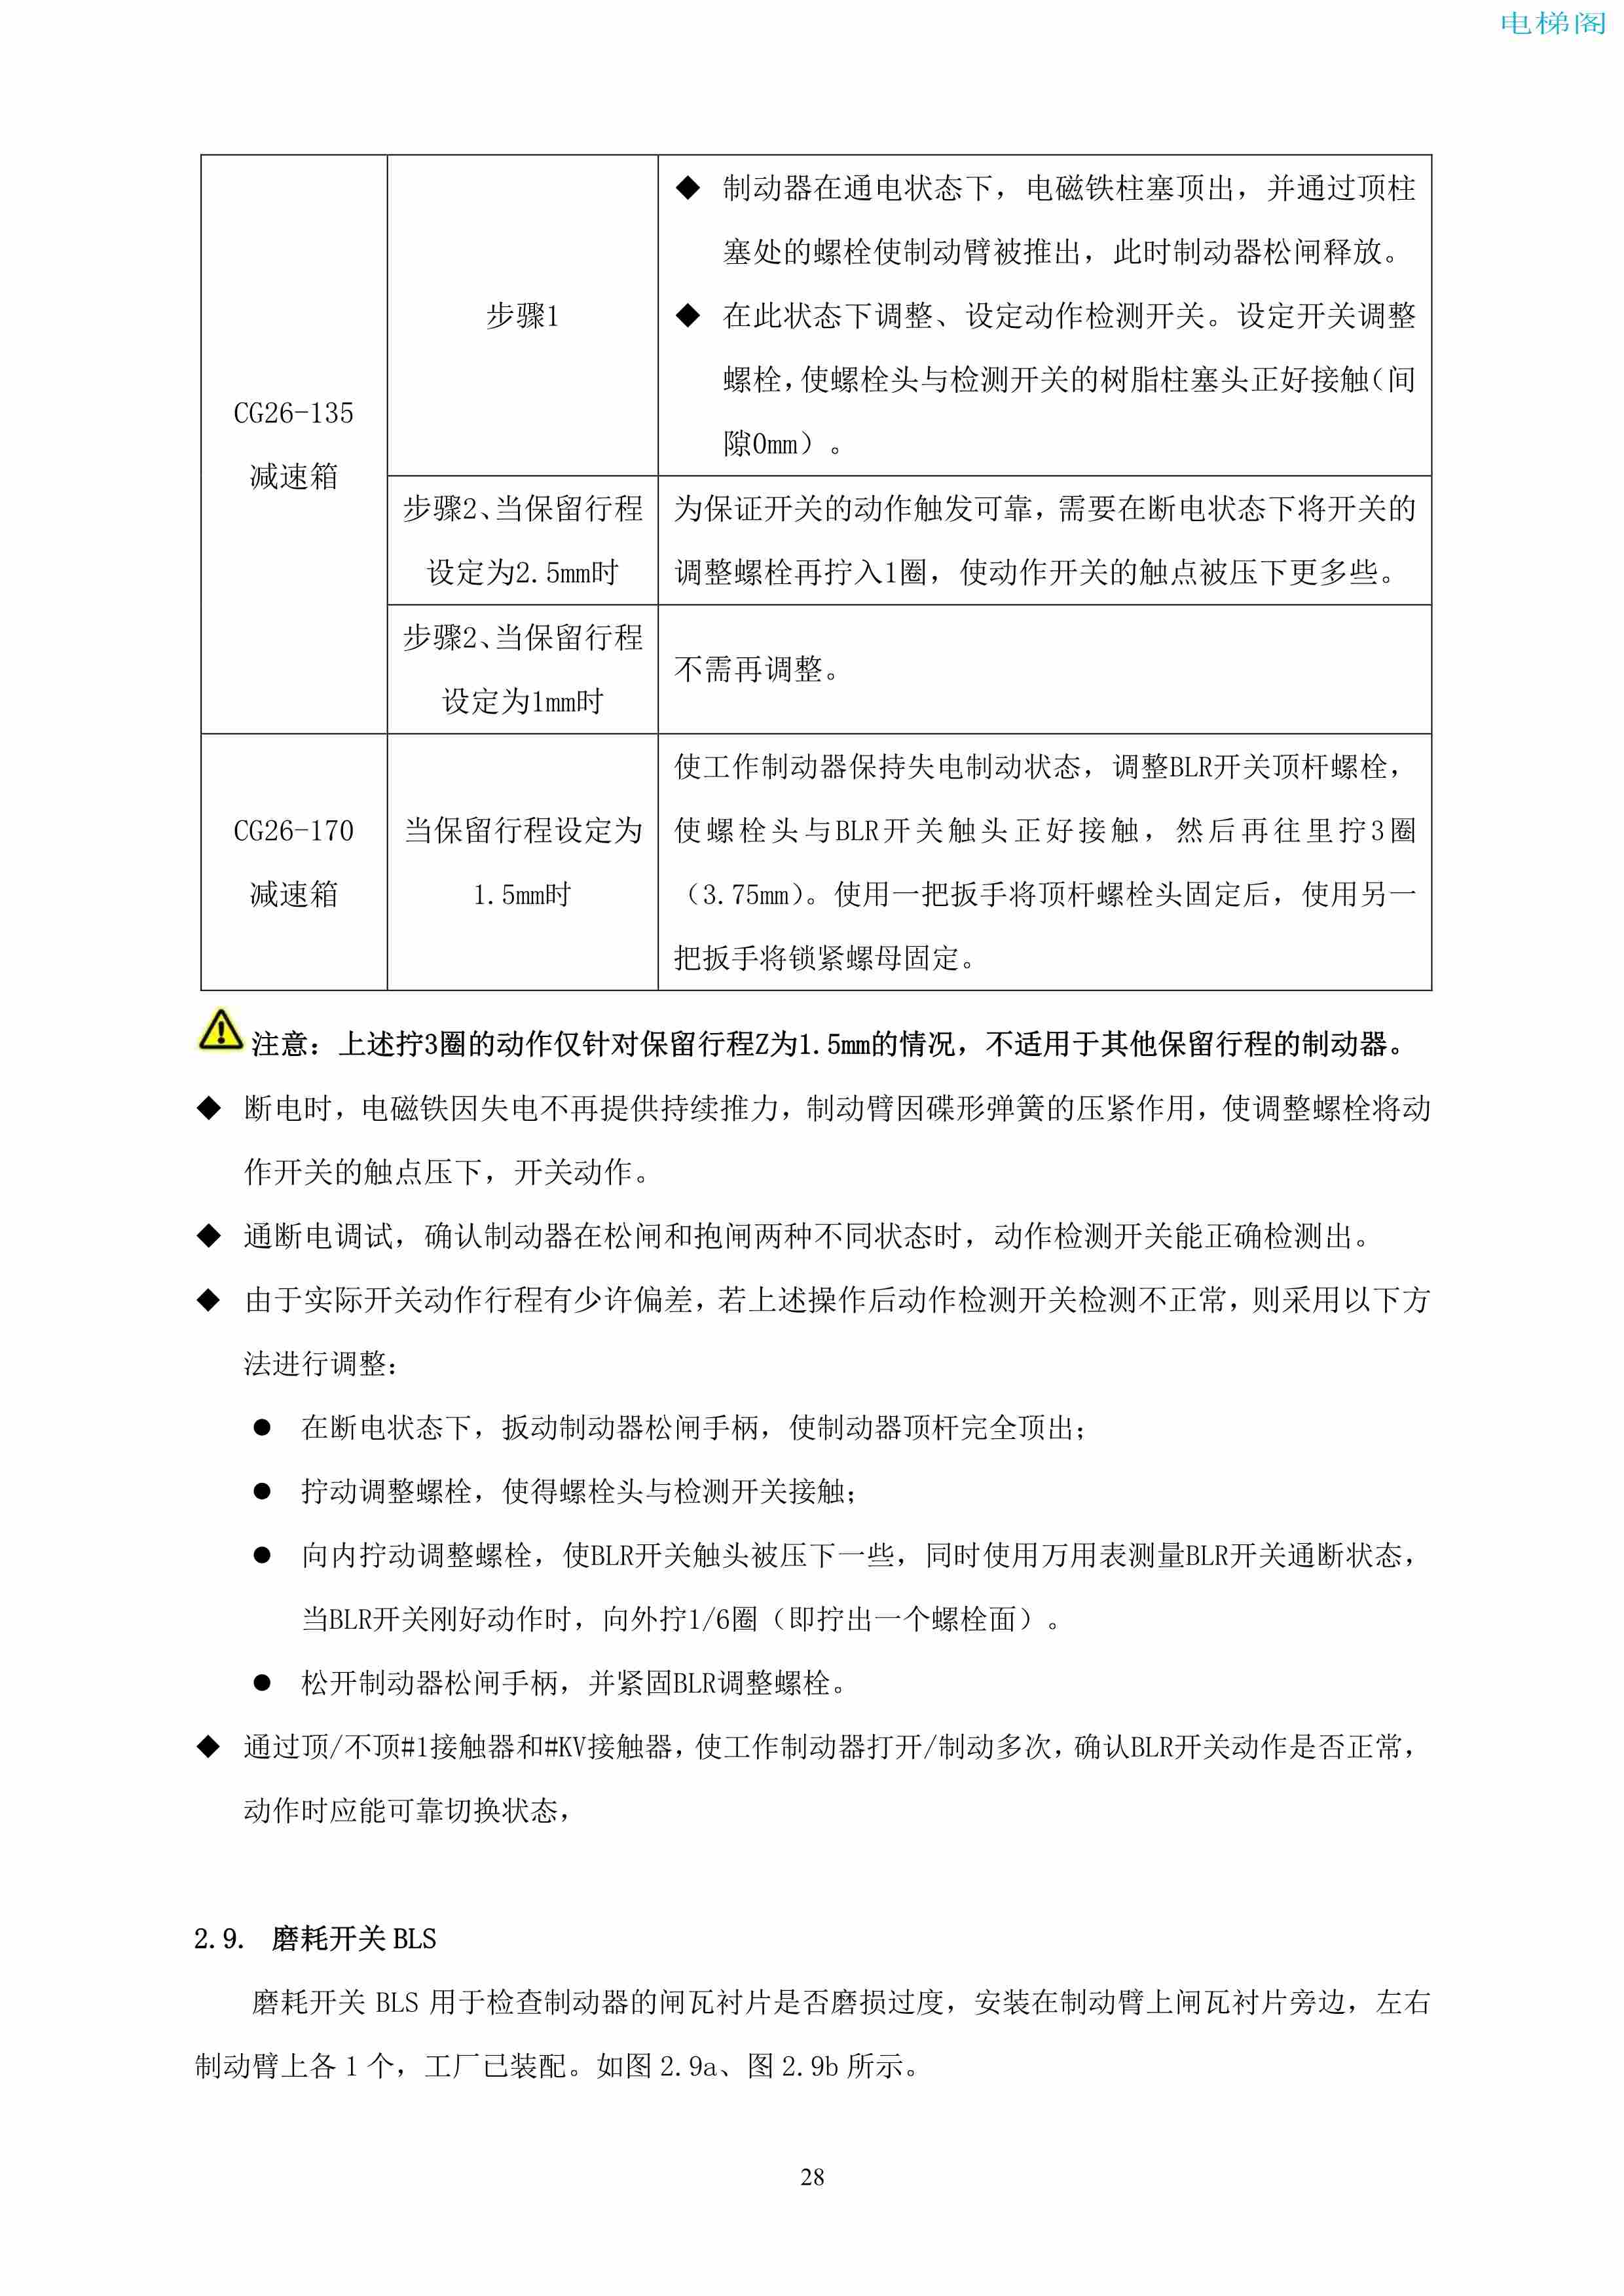 上海三菱电梯有限公司自动扶梯制动器维护作业要领汇编_29.jpg